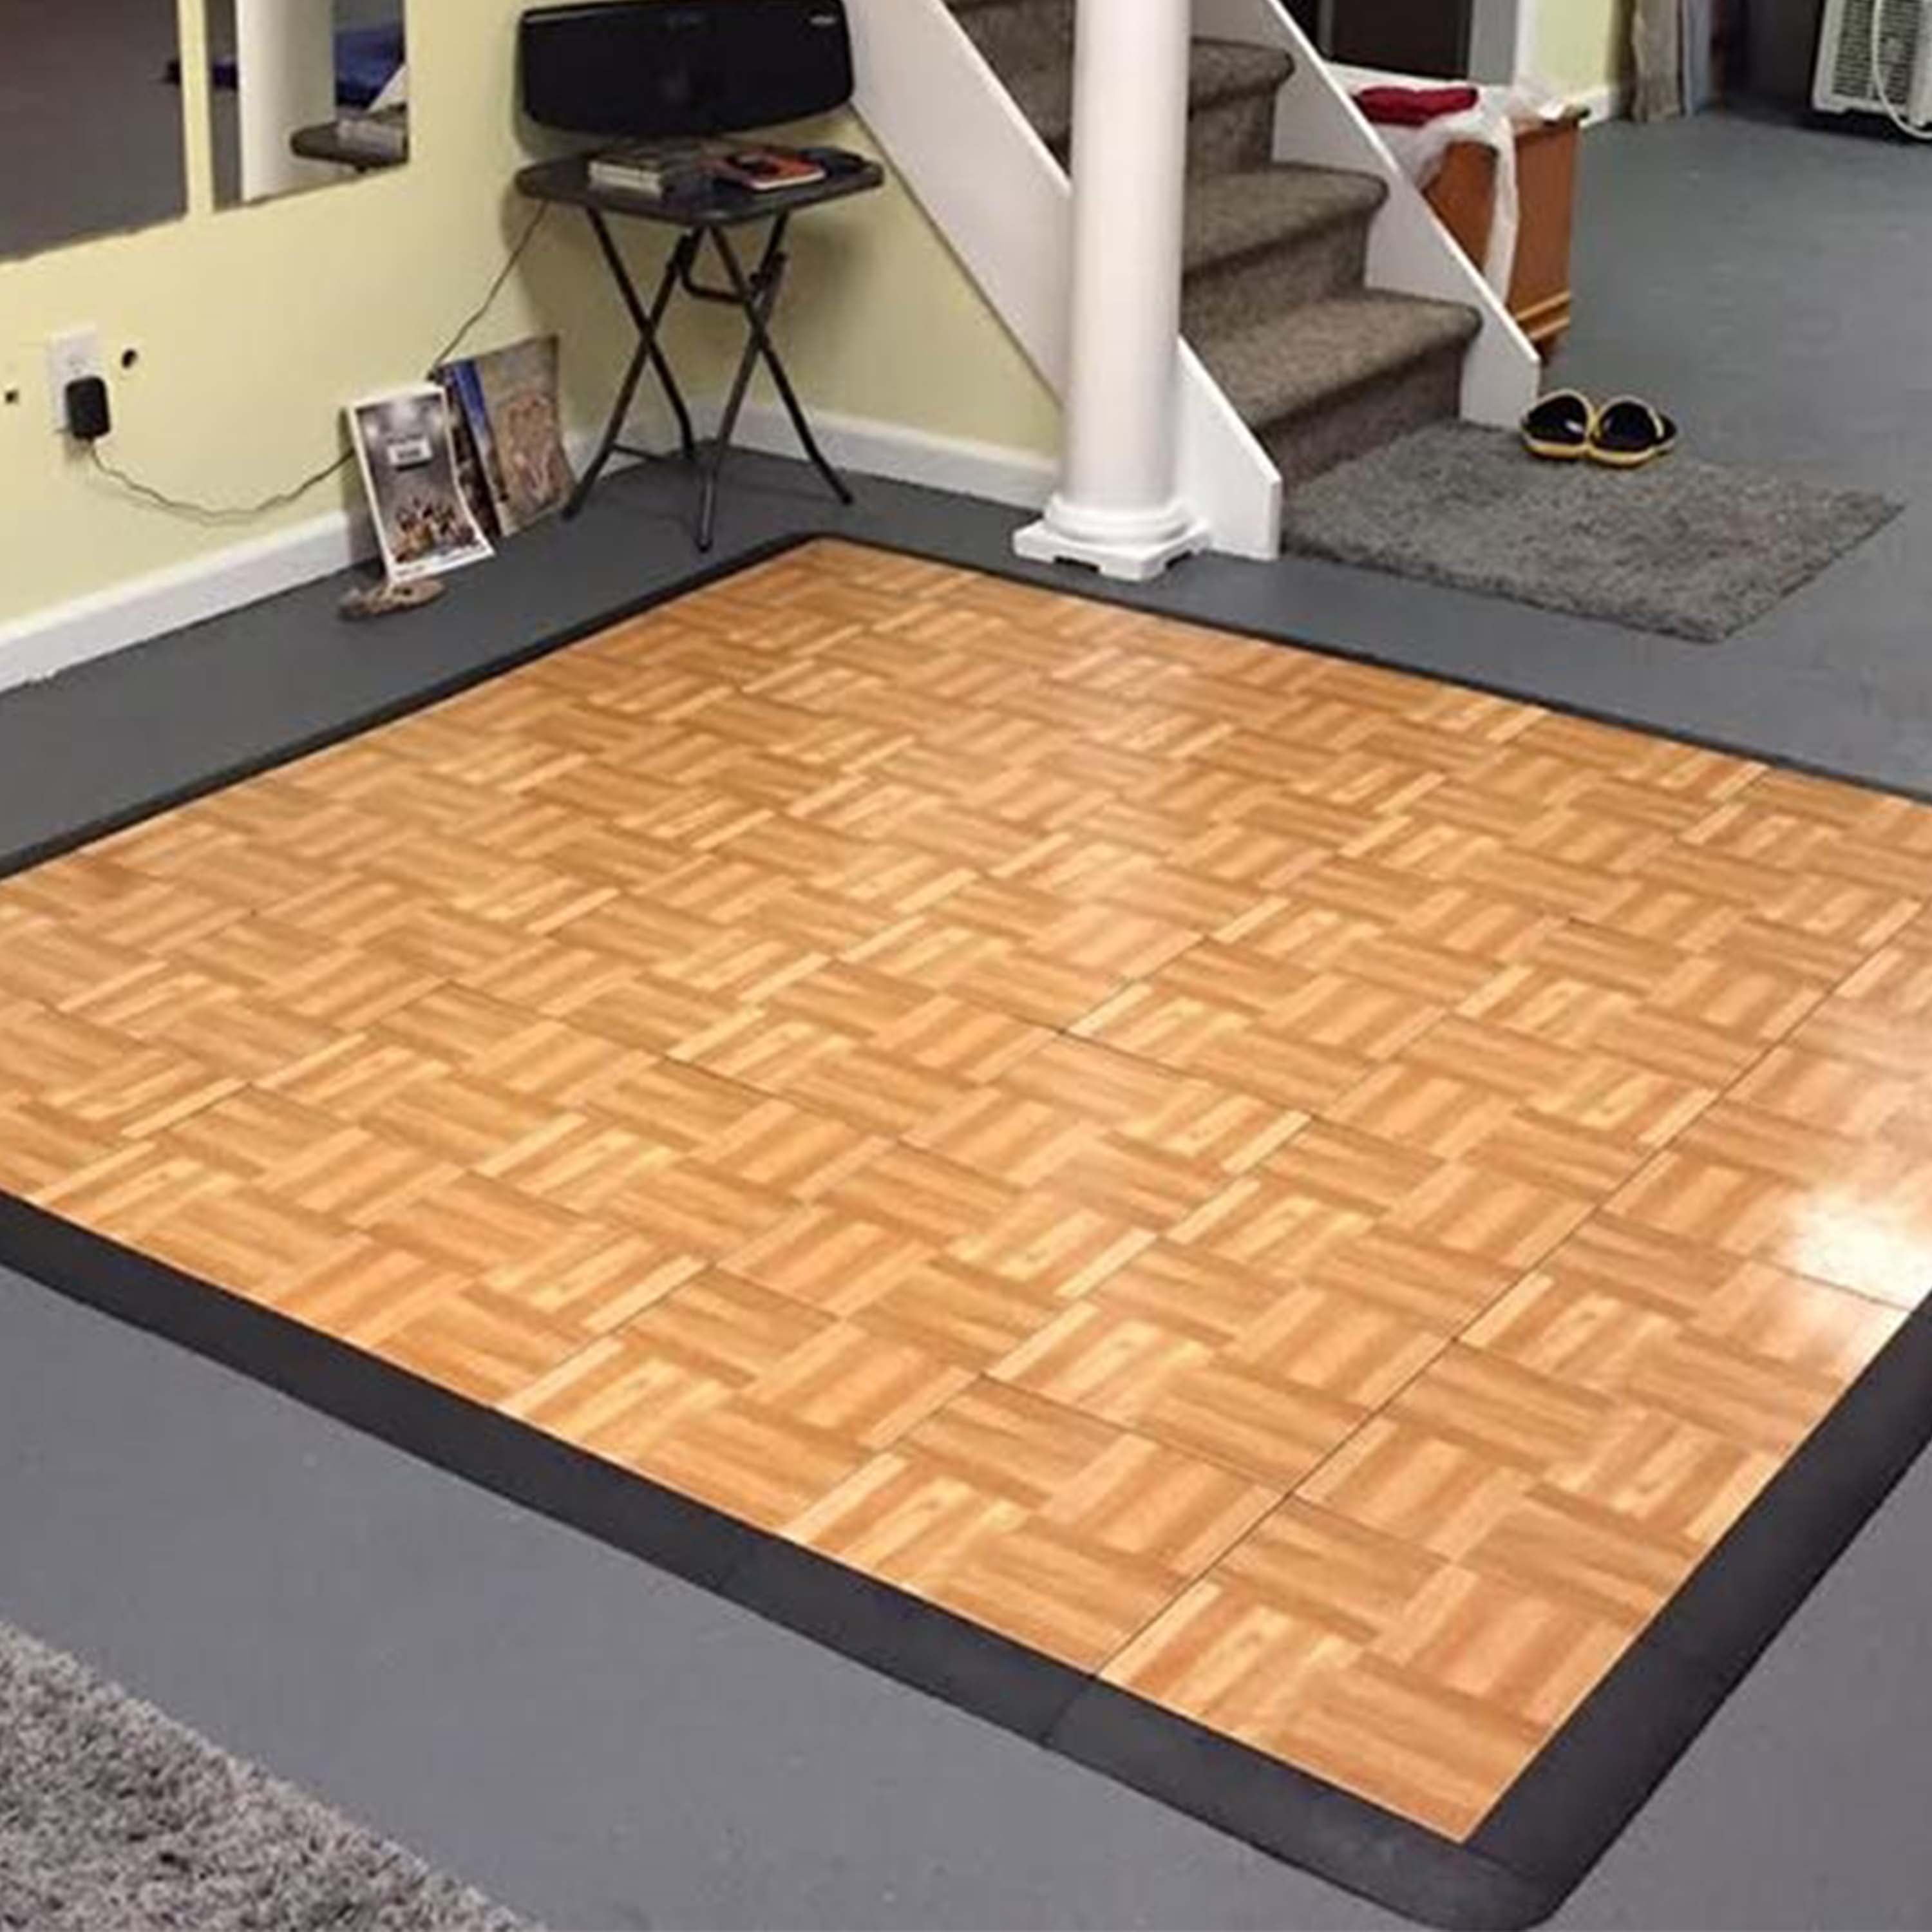 ProRox SL 960 Rockwool, Roxul, Mineral Wool Insulation Board High  Temperature 8# Density (2 x 24 x 48) 7 Boards per lot